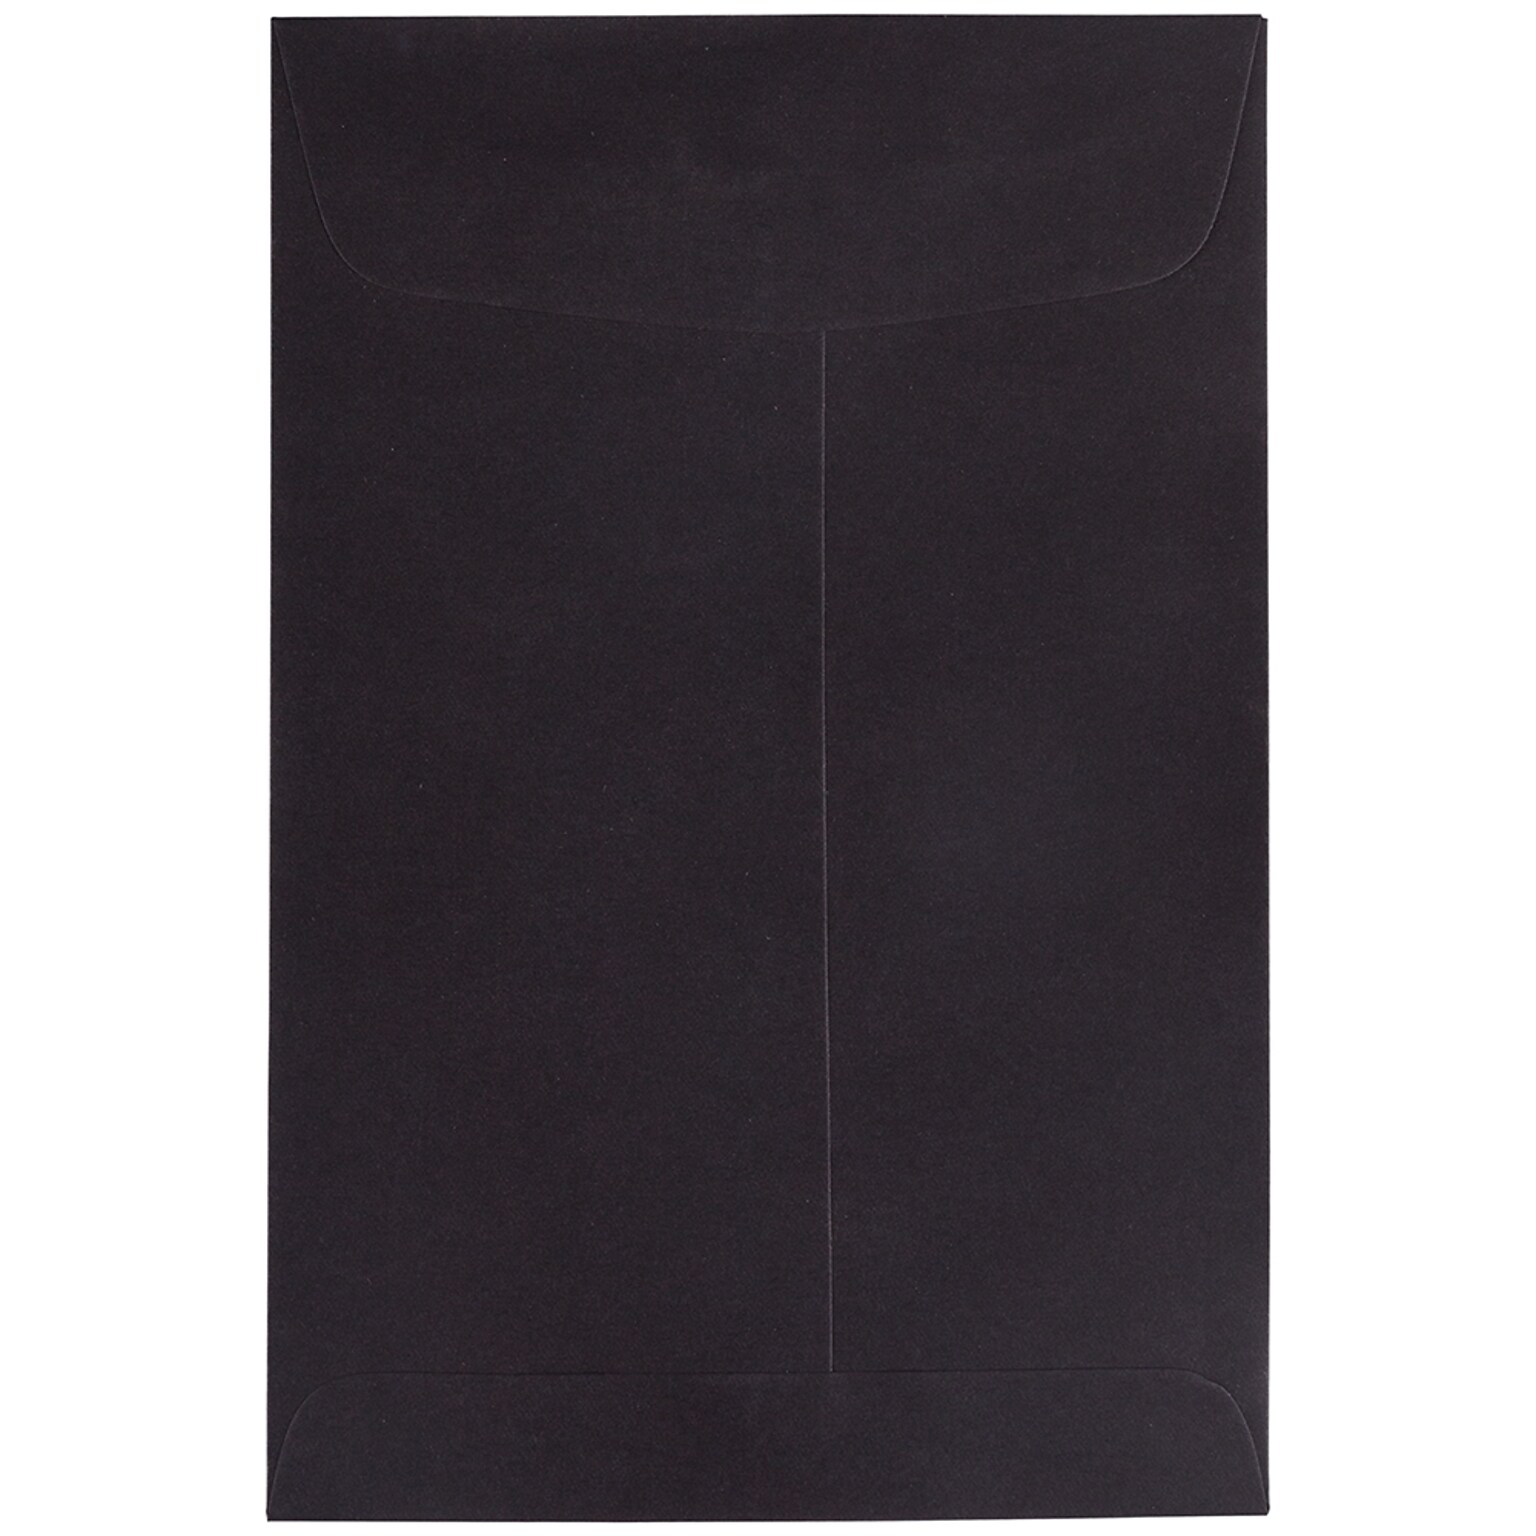 JAM Paper 6 x 9 Open End Catalog Envelopes, Black, 10/Pack (88095B)